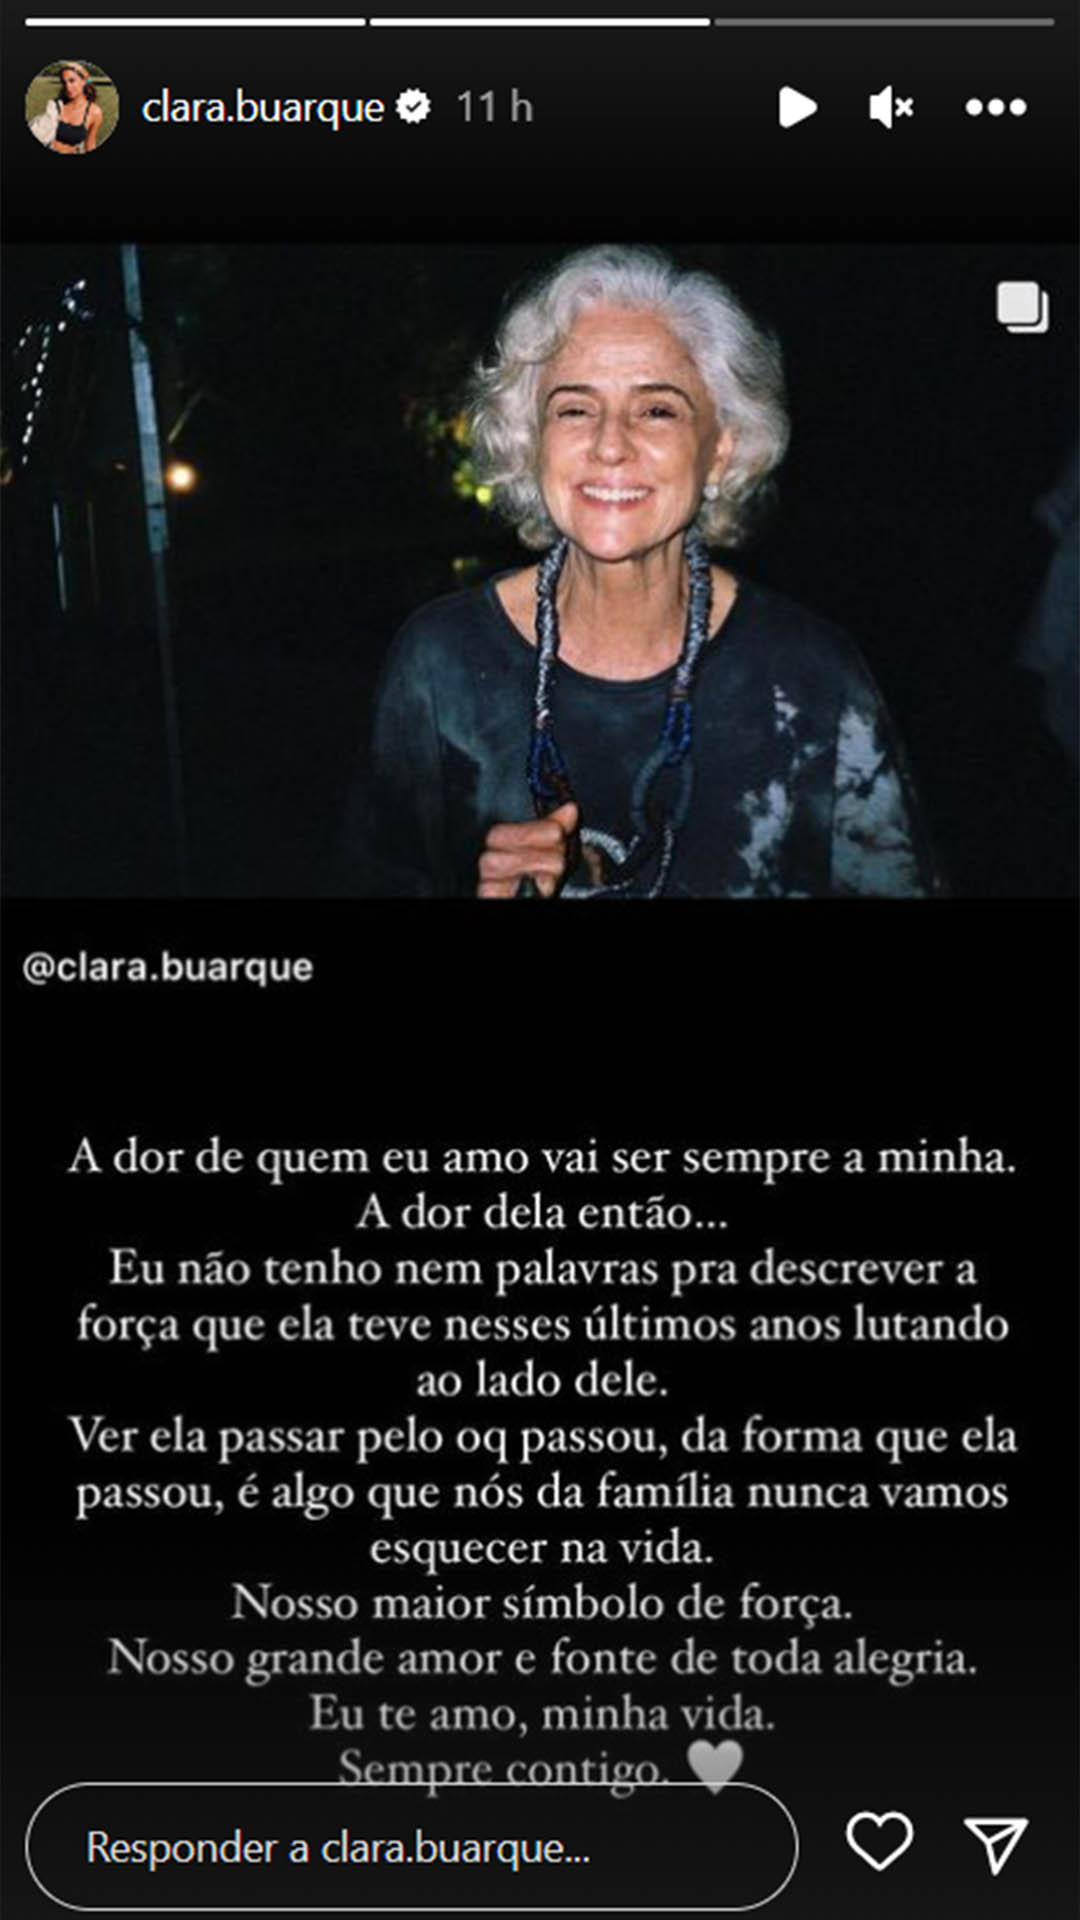 Post da Clara Buarque